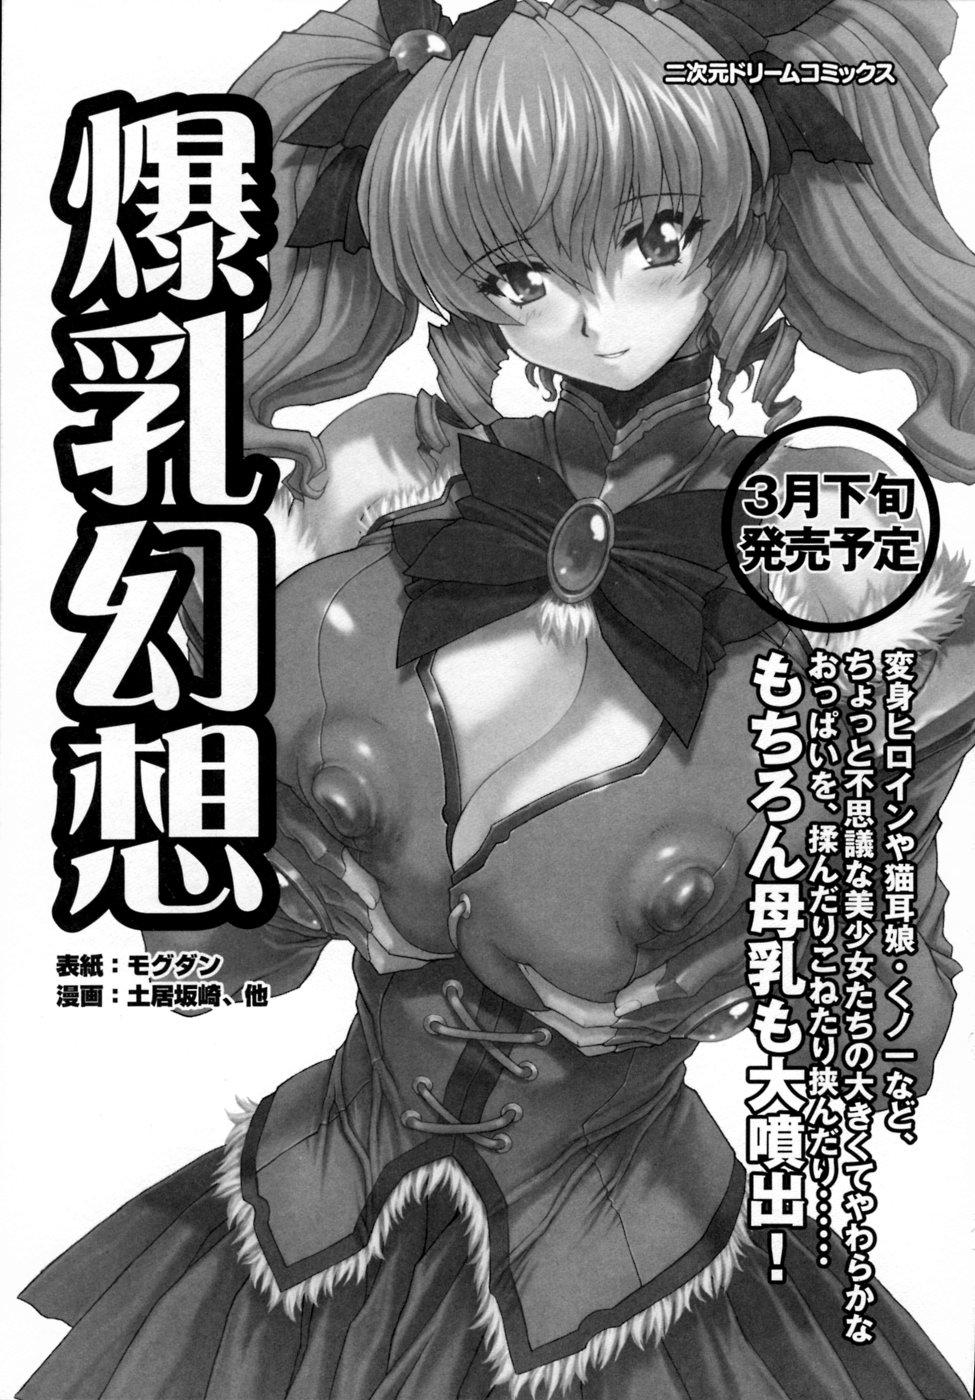 Inju Seisen Anthology Comics 156